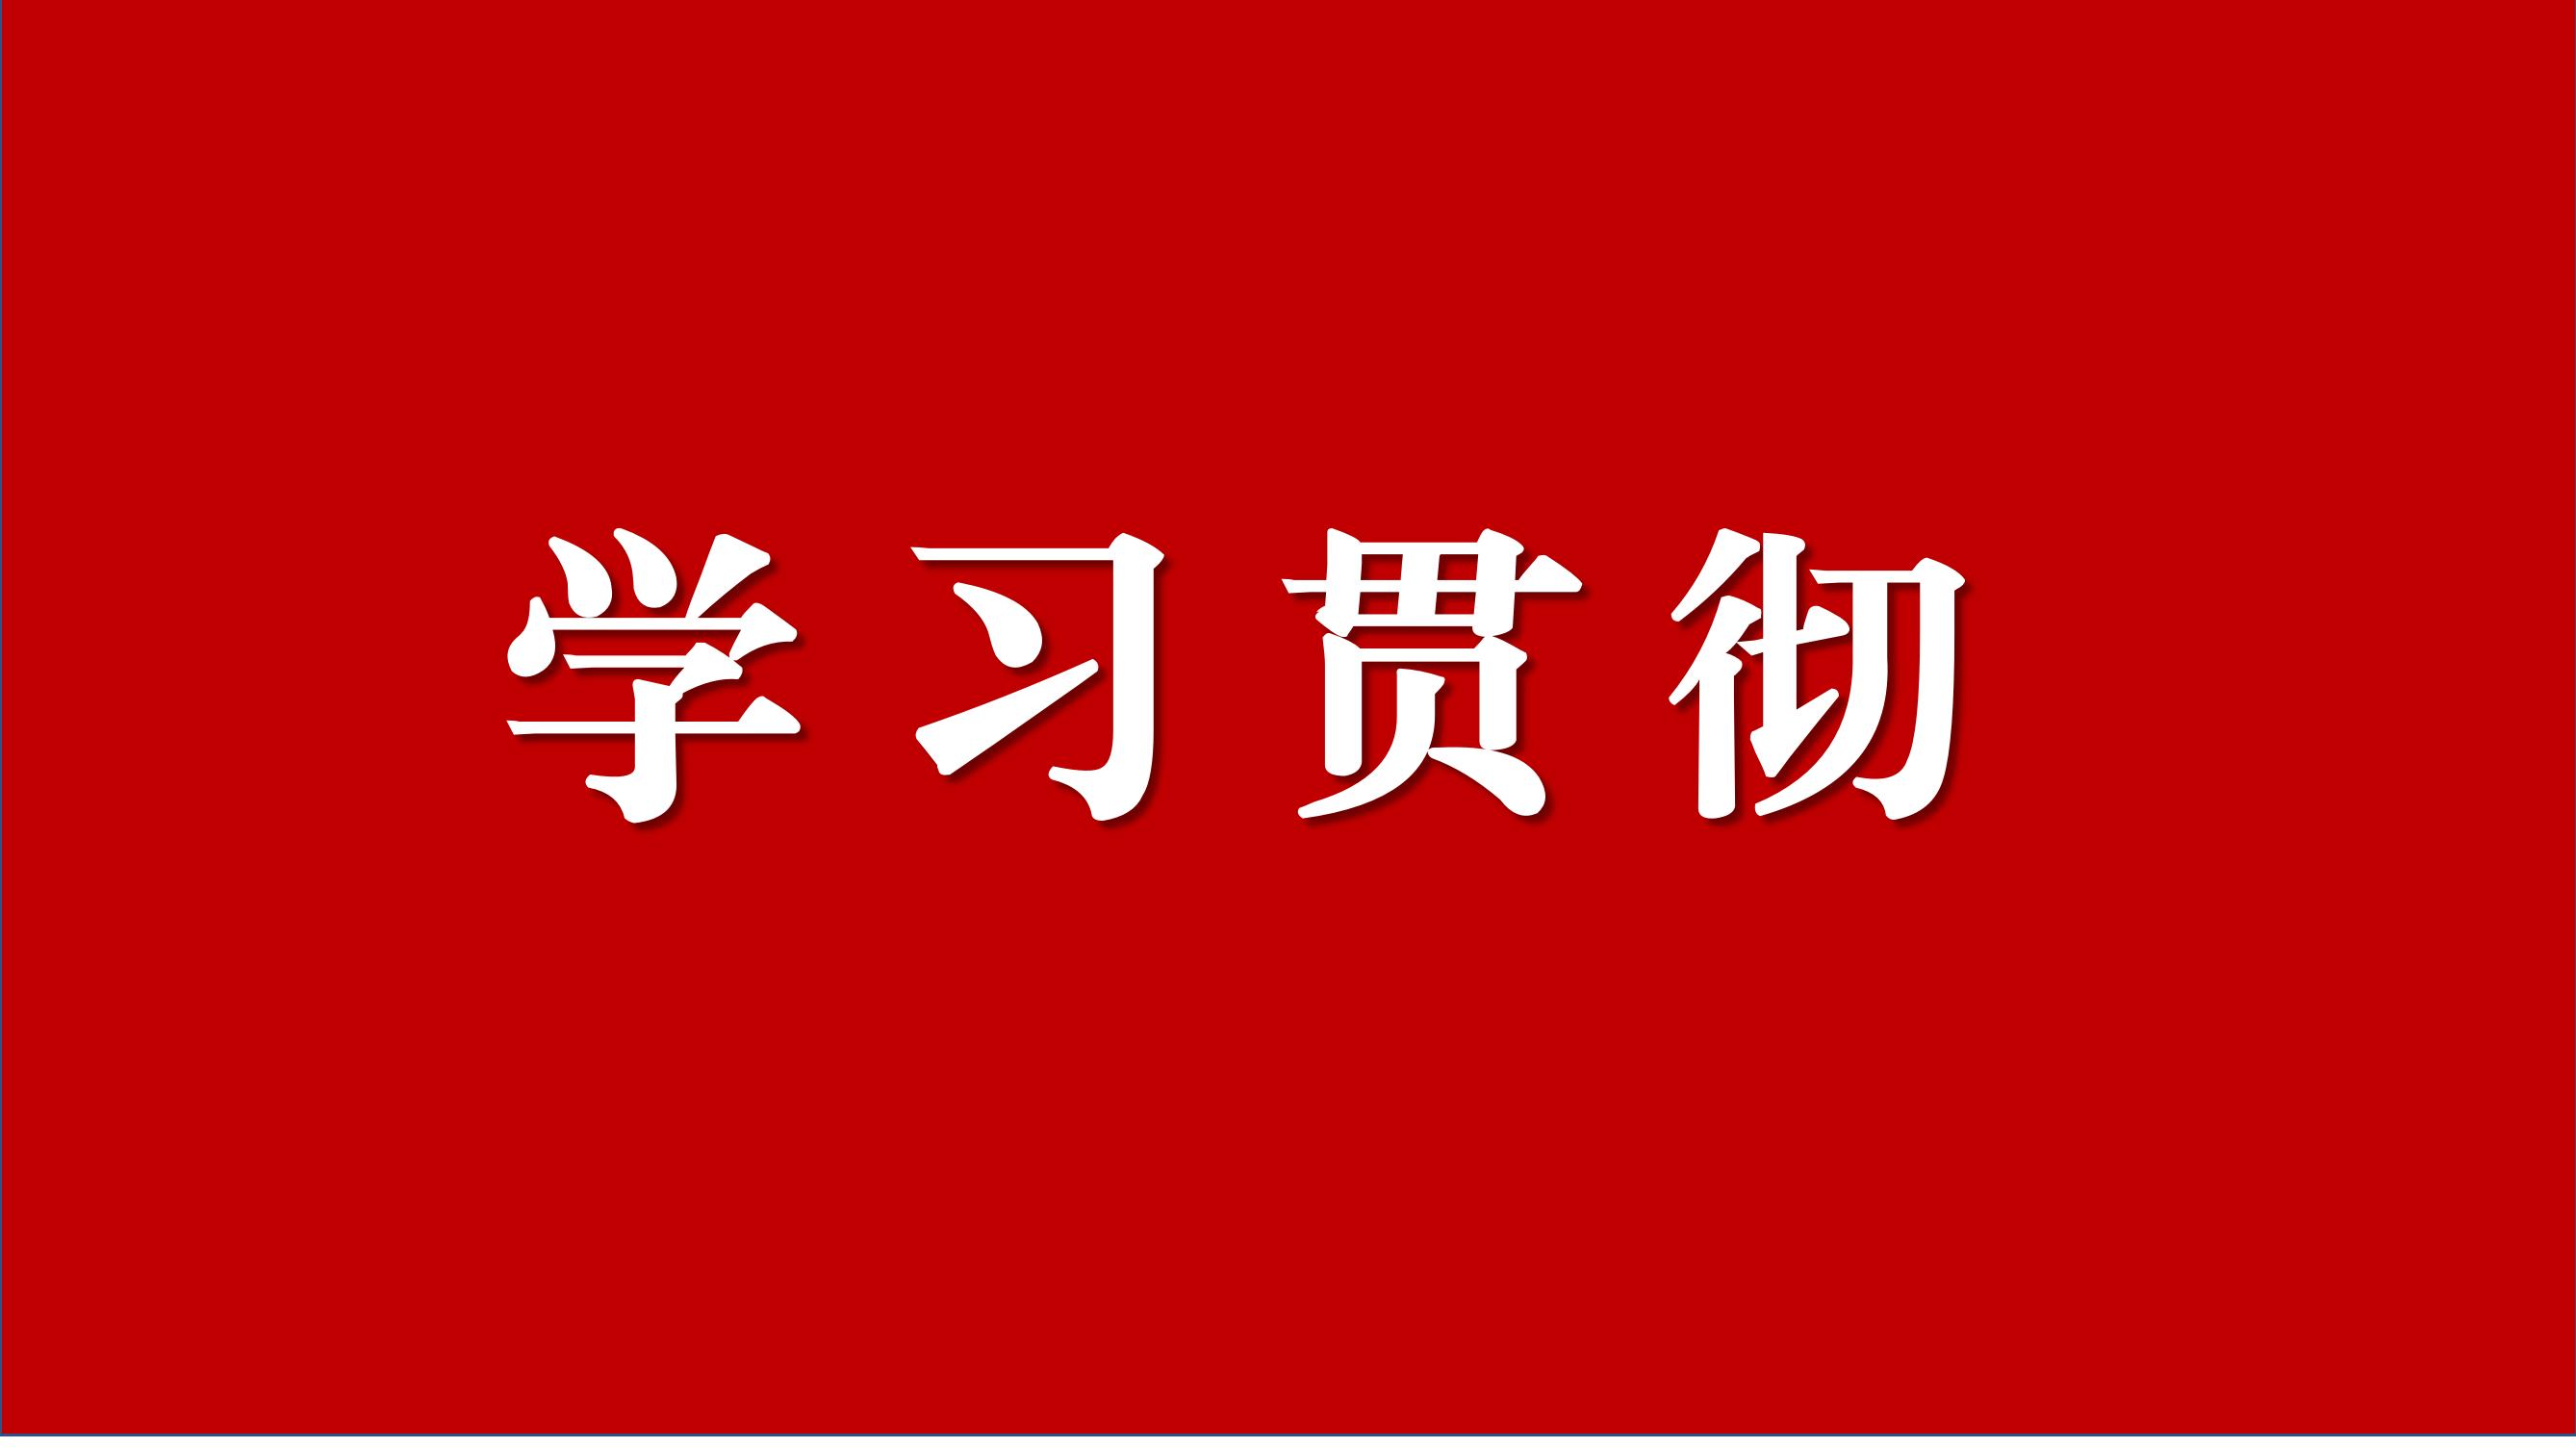 中國共產黨黑龍江省第十三屆紀律檢查委員會第二次全體會議決議